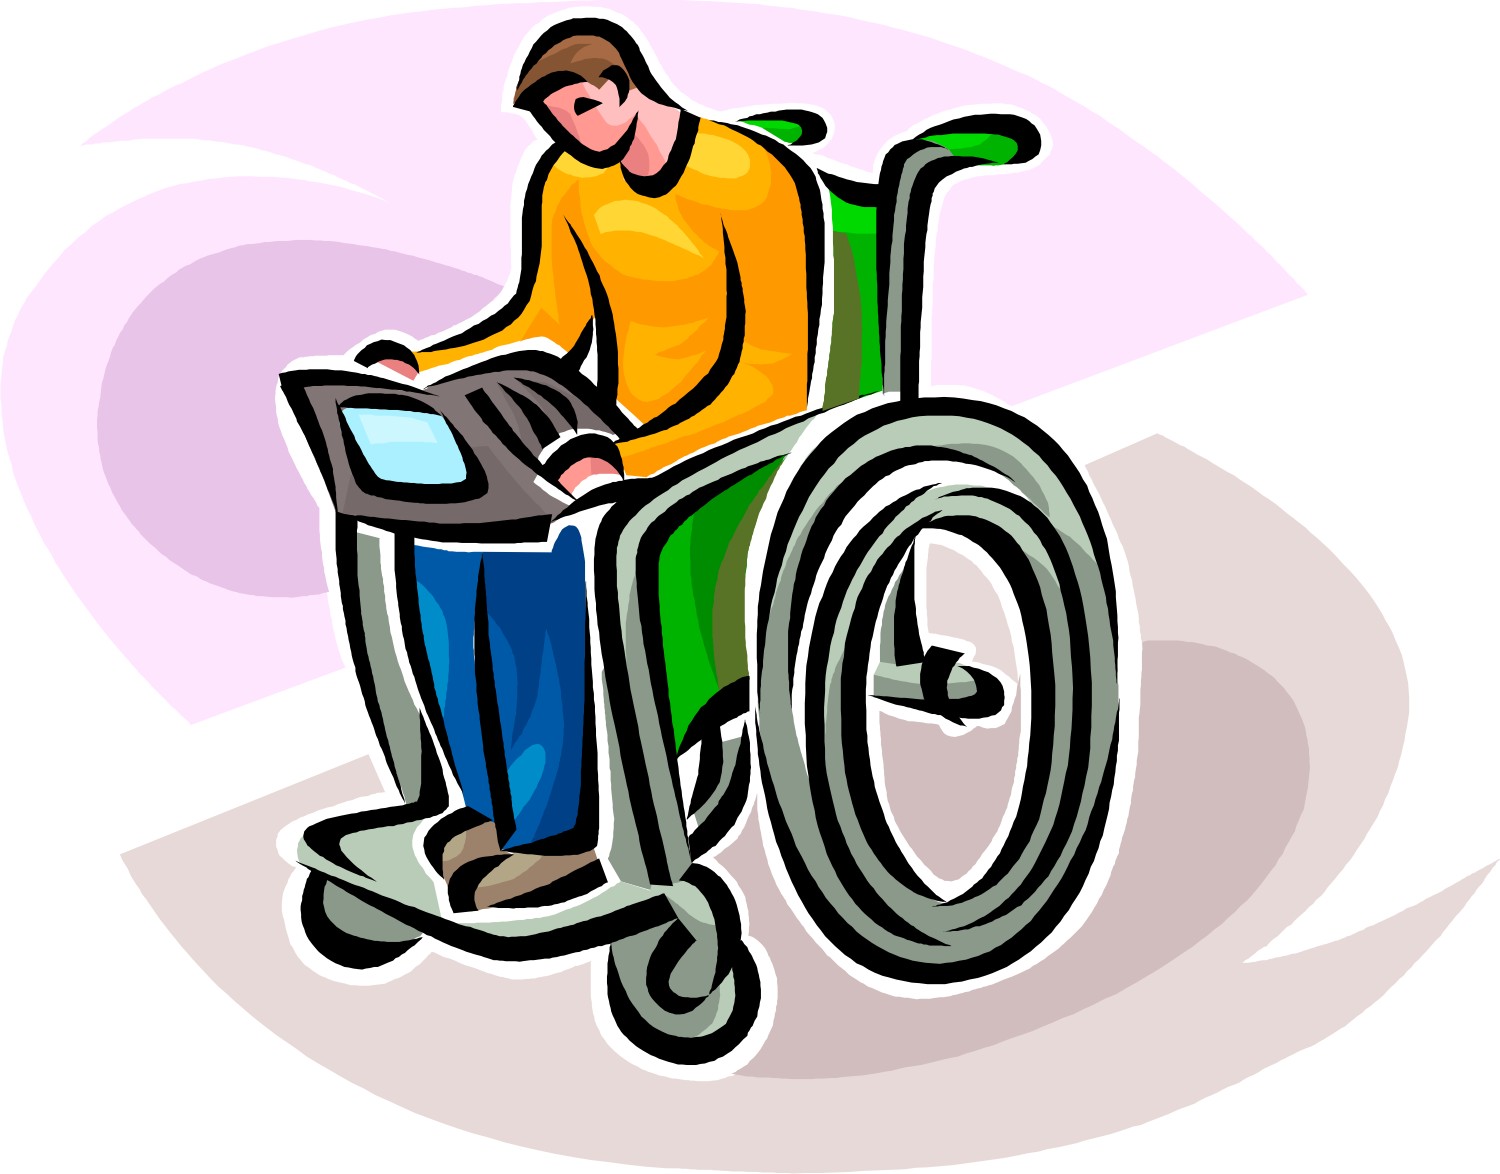 Personas con discapacidad optan por tener negocio propio | El Jornal Costa  Rica